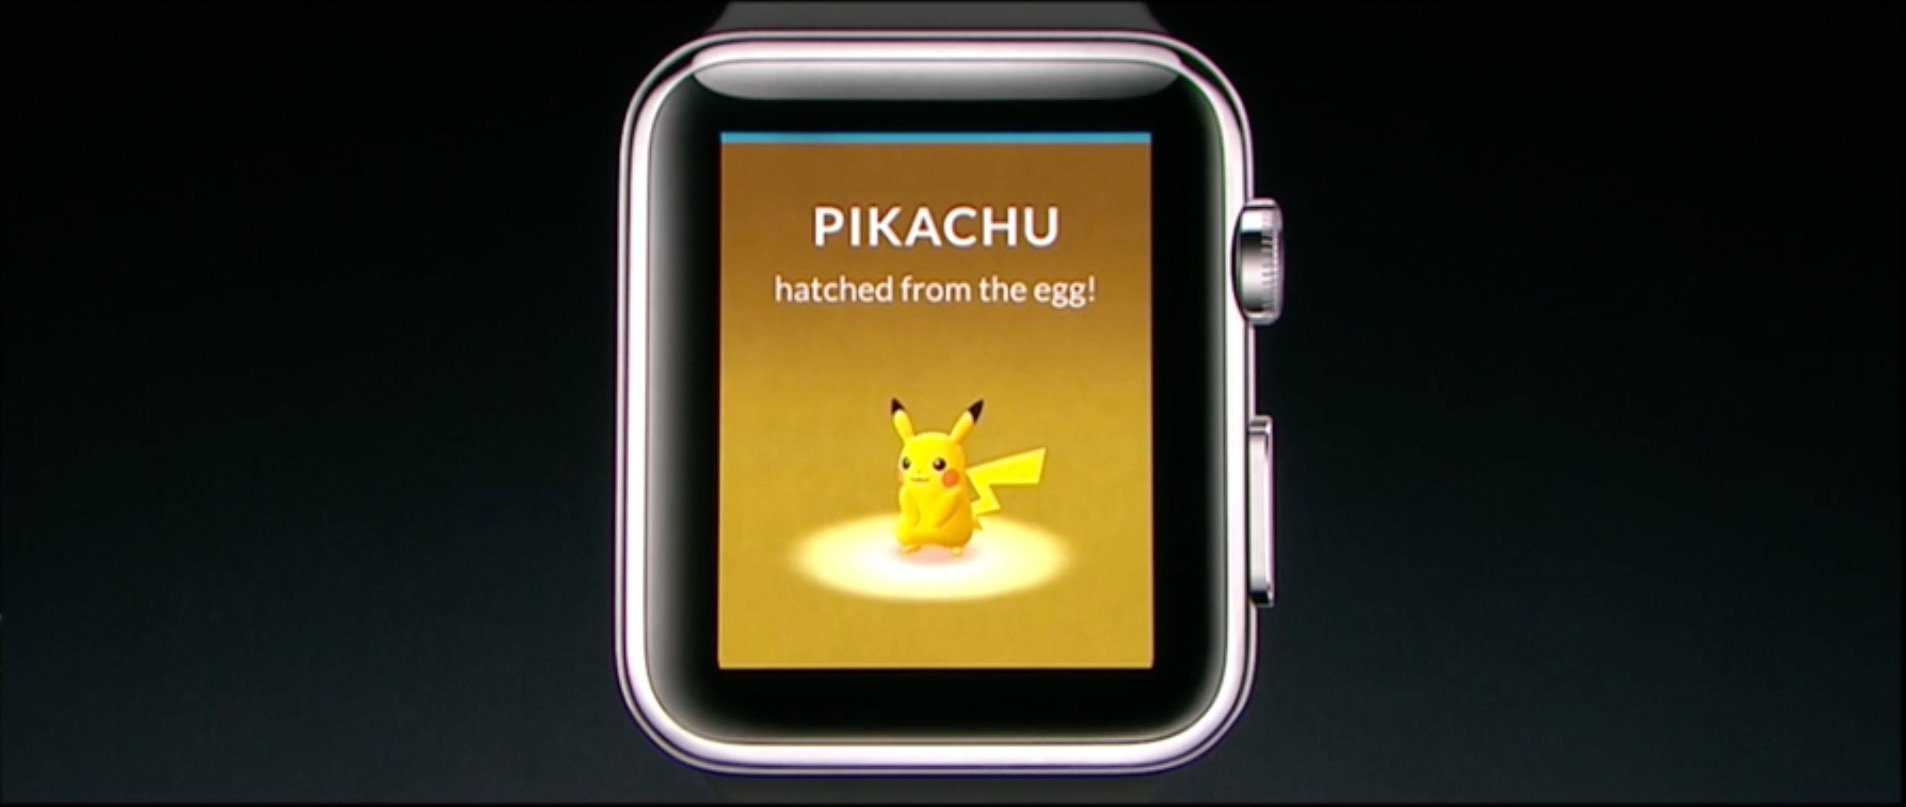 ポケモンGO、Apple Watchに対応。近くのポケモンやポケストップのチェックも可能に